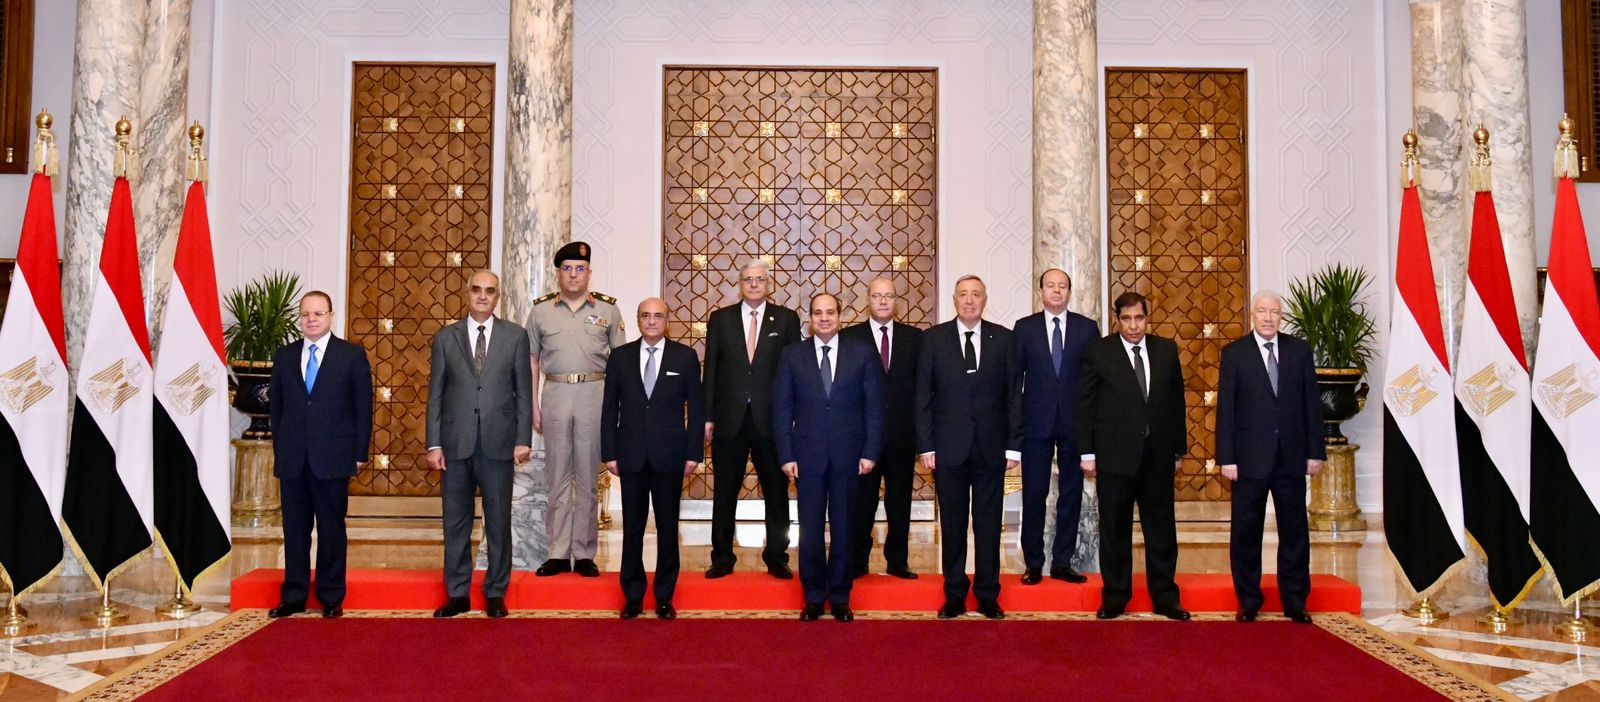 المتحدث الرئاسي ينشر صور اجتماع الرئيس السيسي بأعضاء المجلس الأعلى للهيئات القضائية